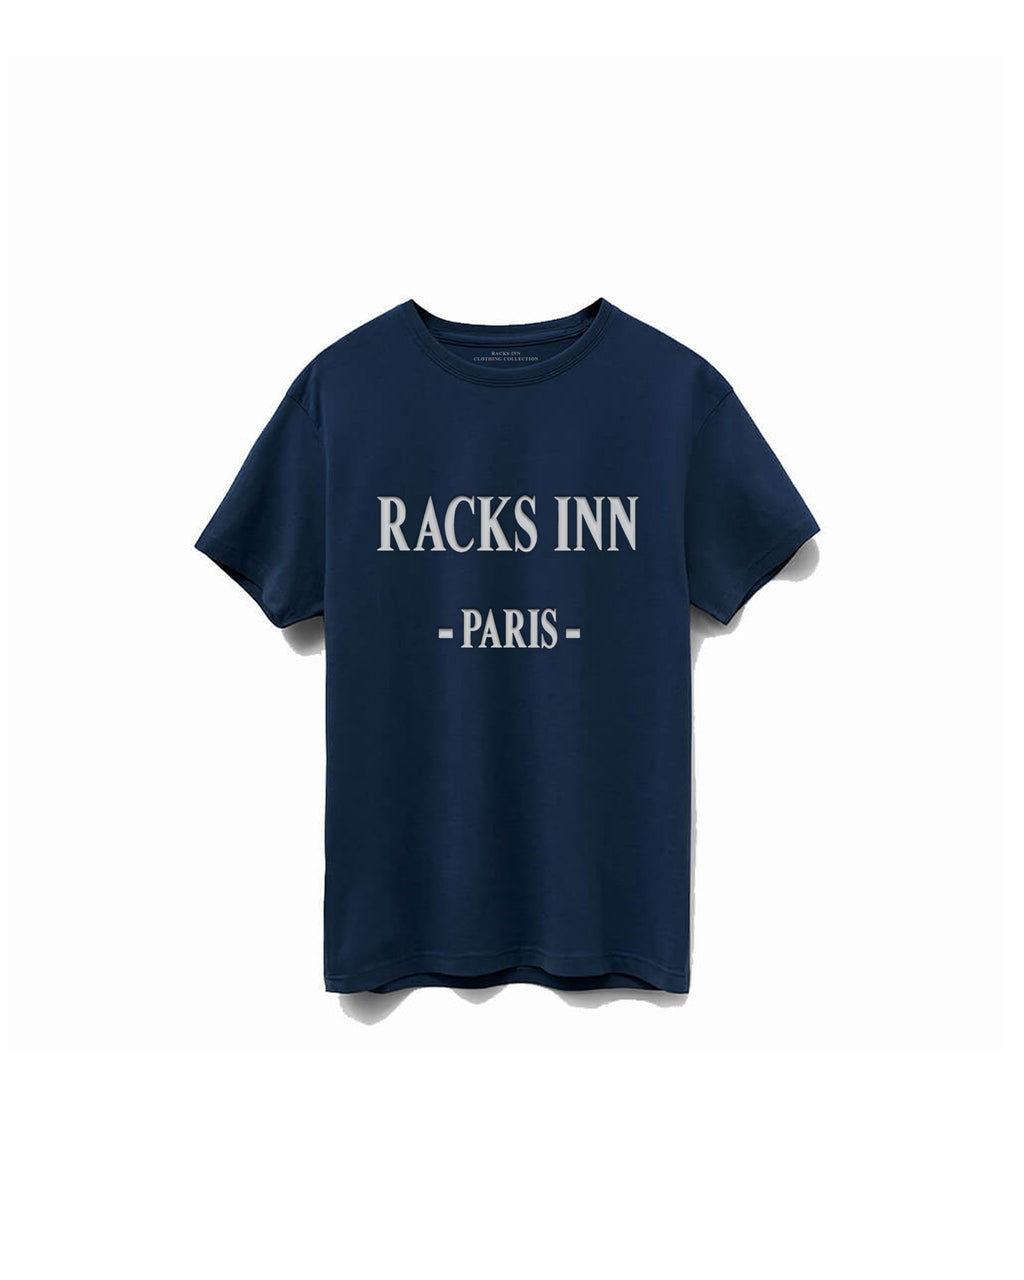 Signature Paris T-Shirt - Navy